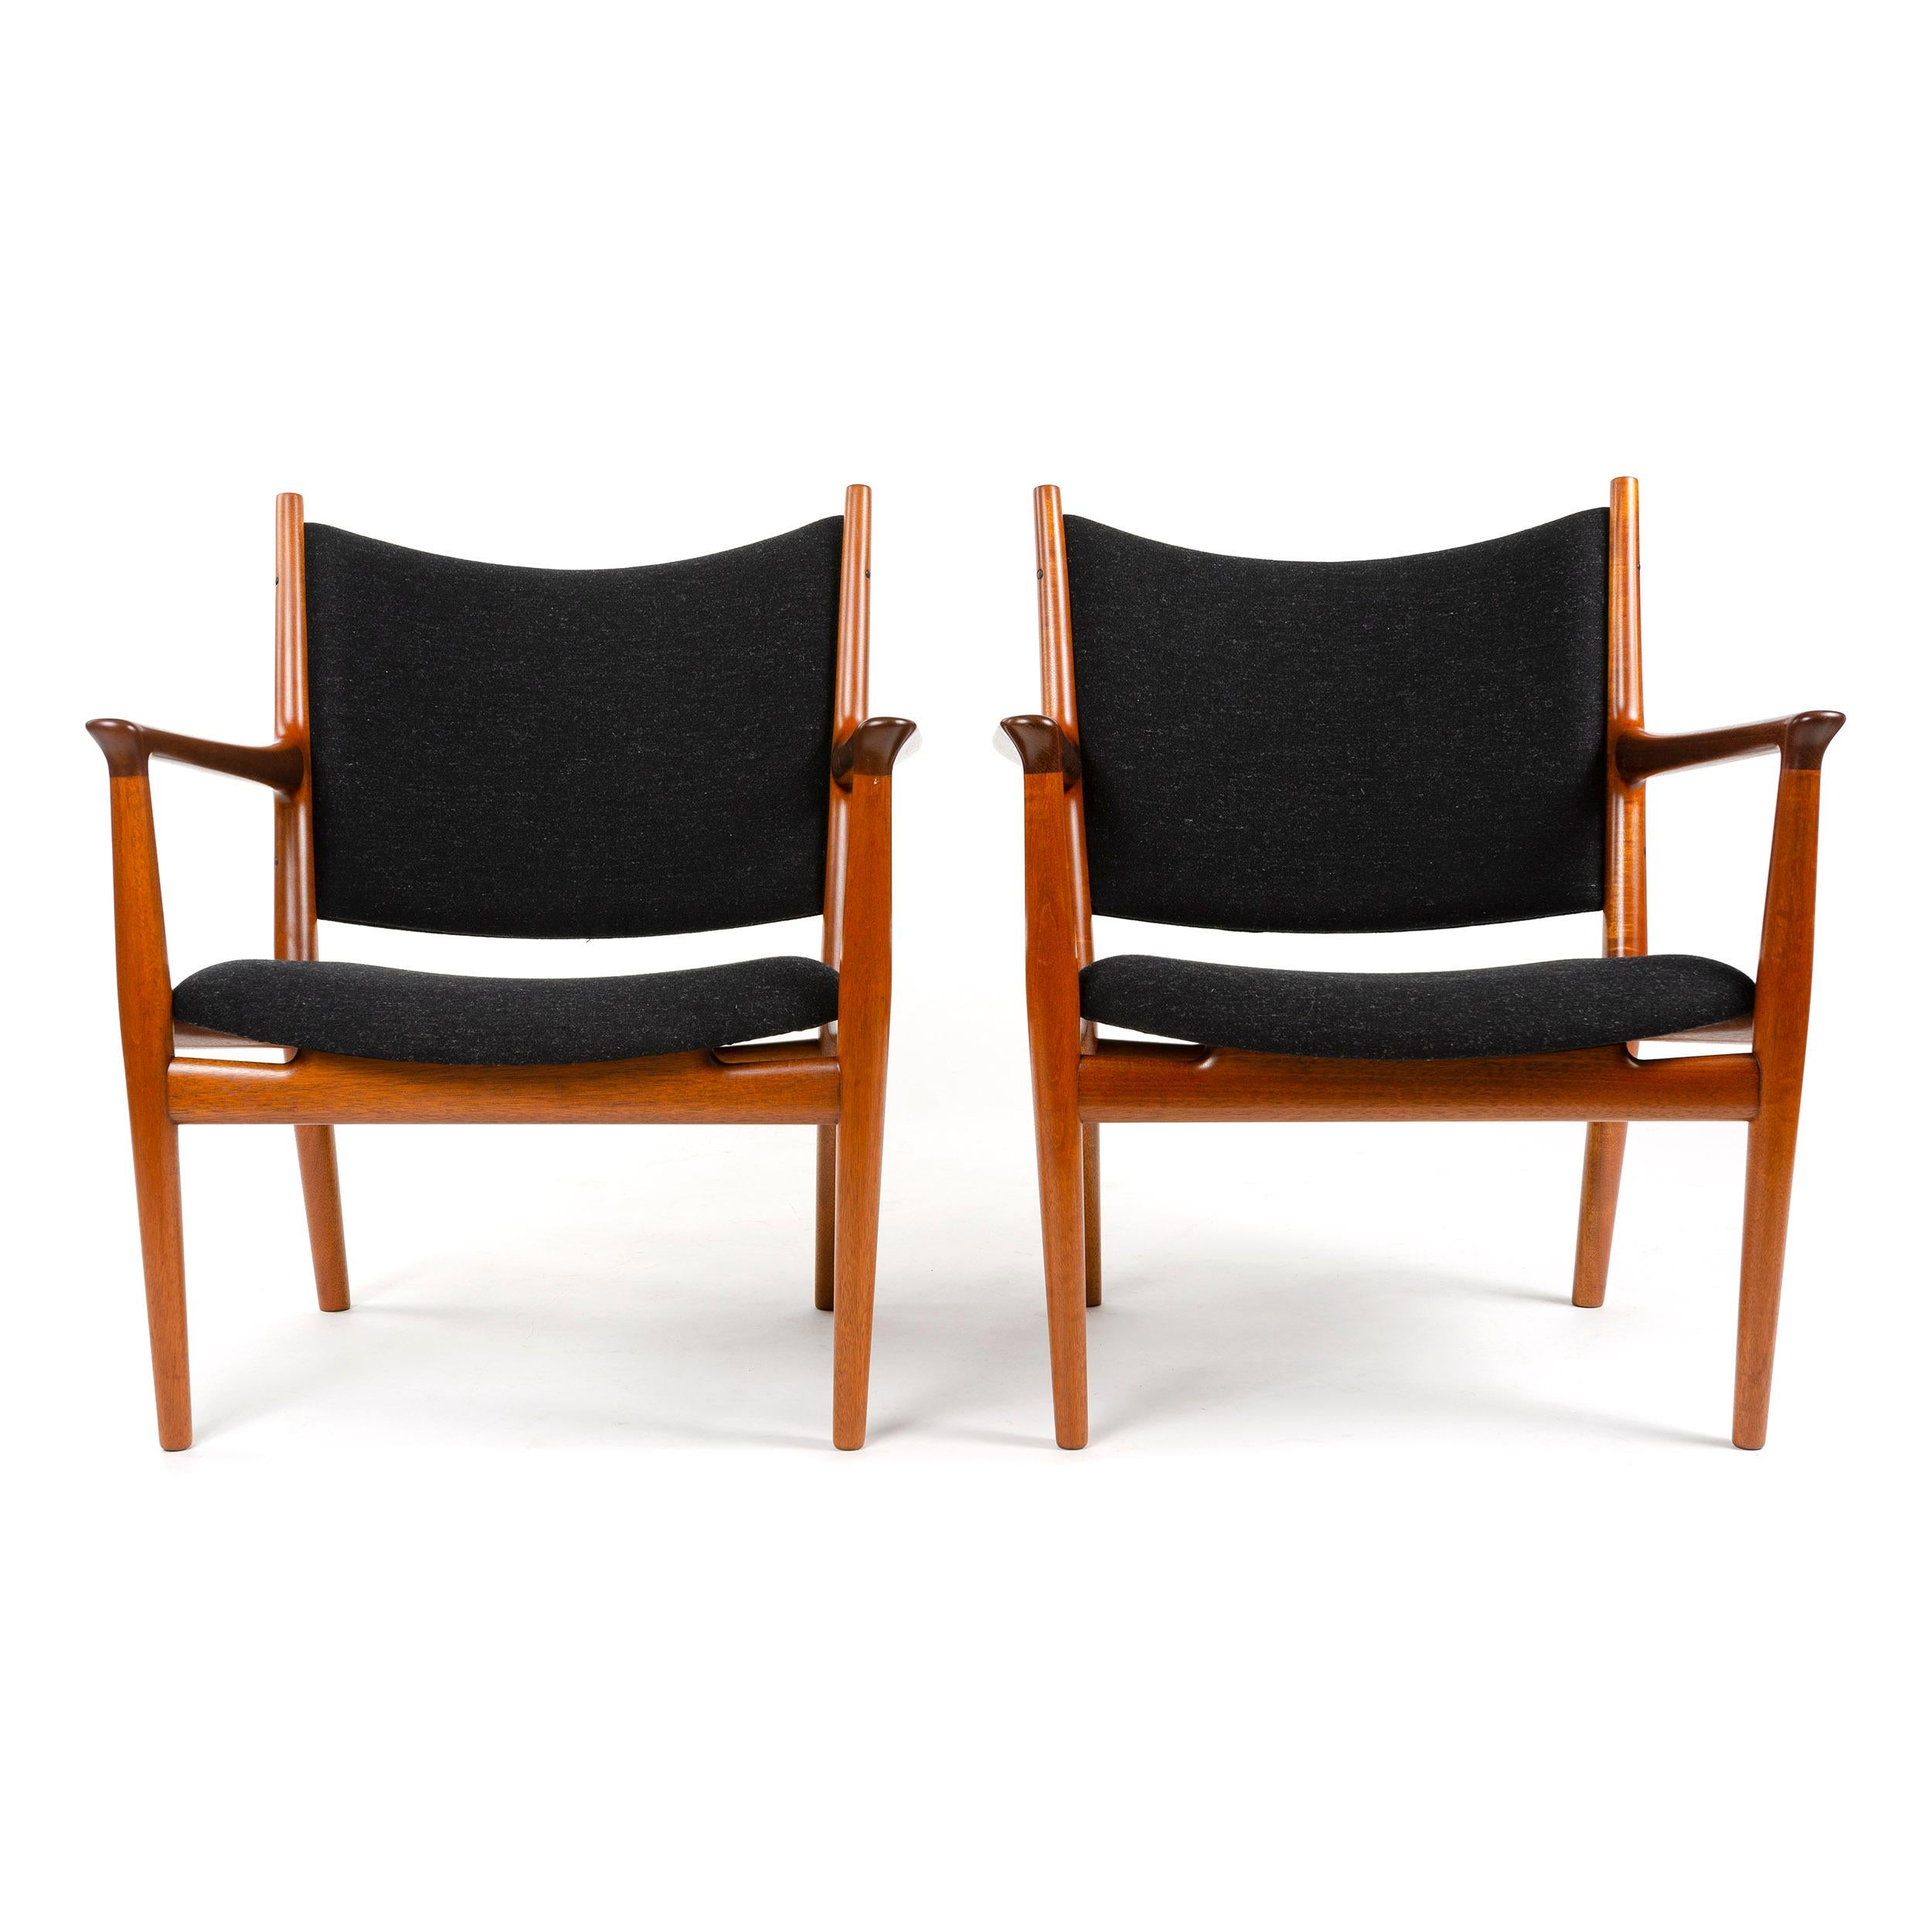 Ein ungewöhnliches Paar Mahagoni-Sessel, neu gepolstert mit dunkelgrauem Wollsavak.